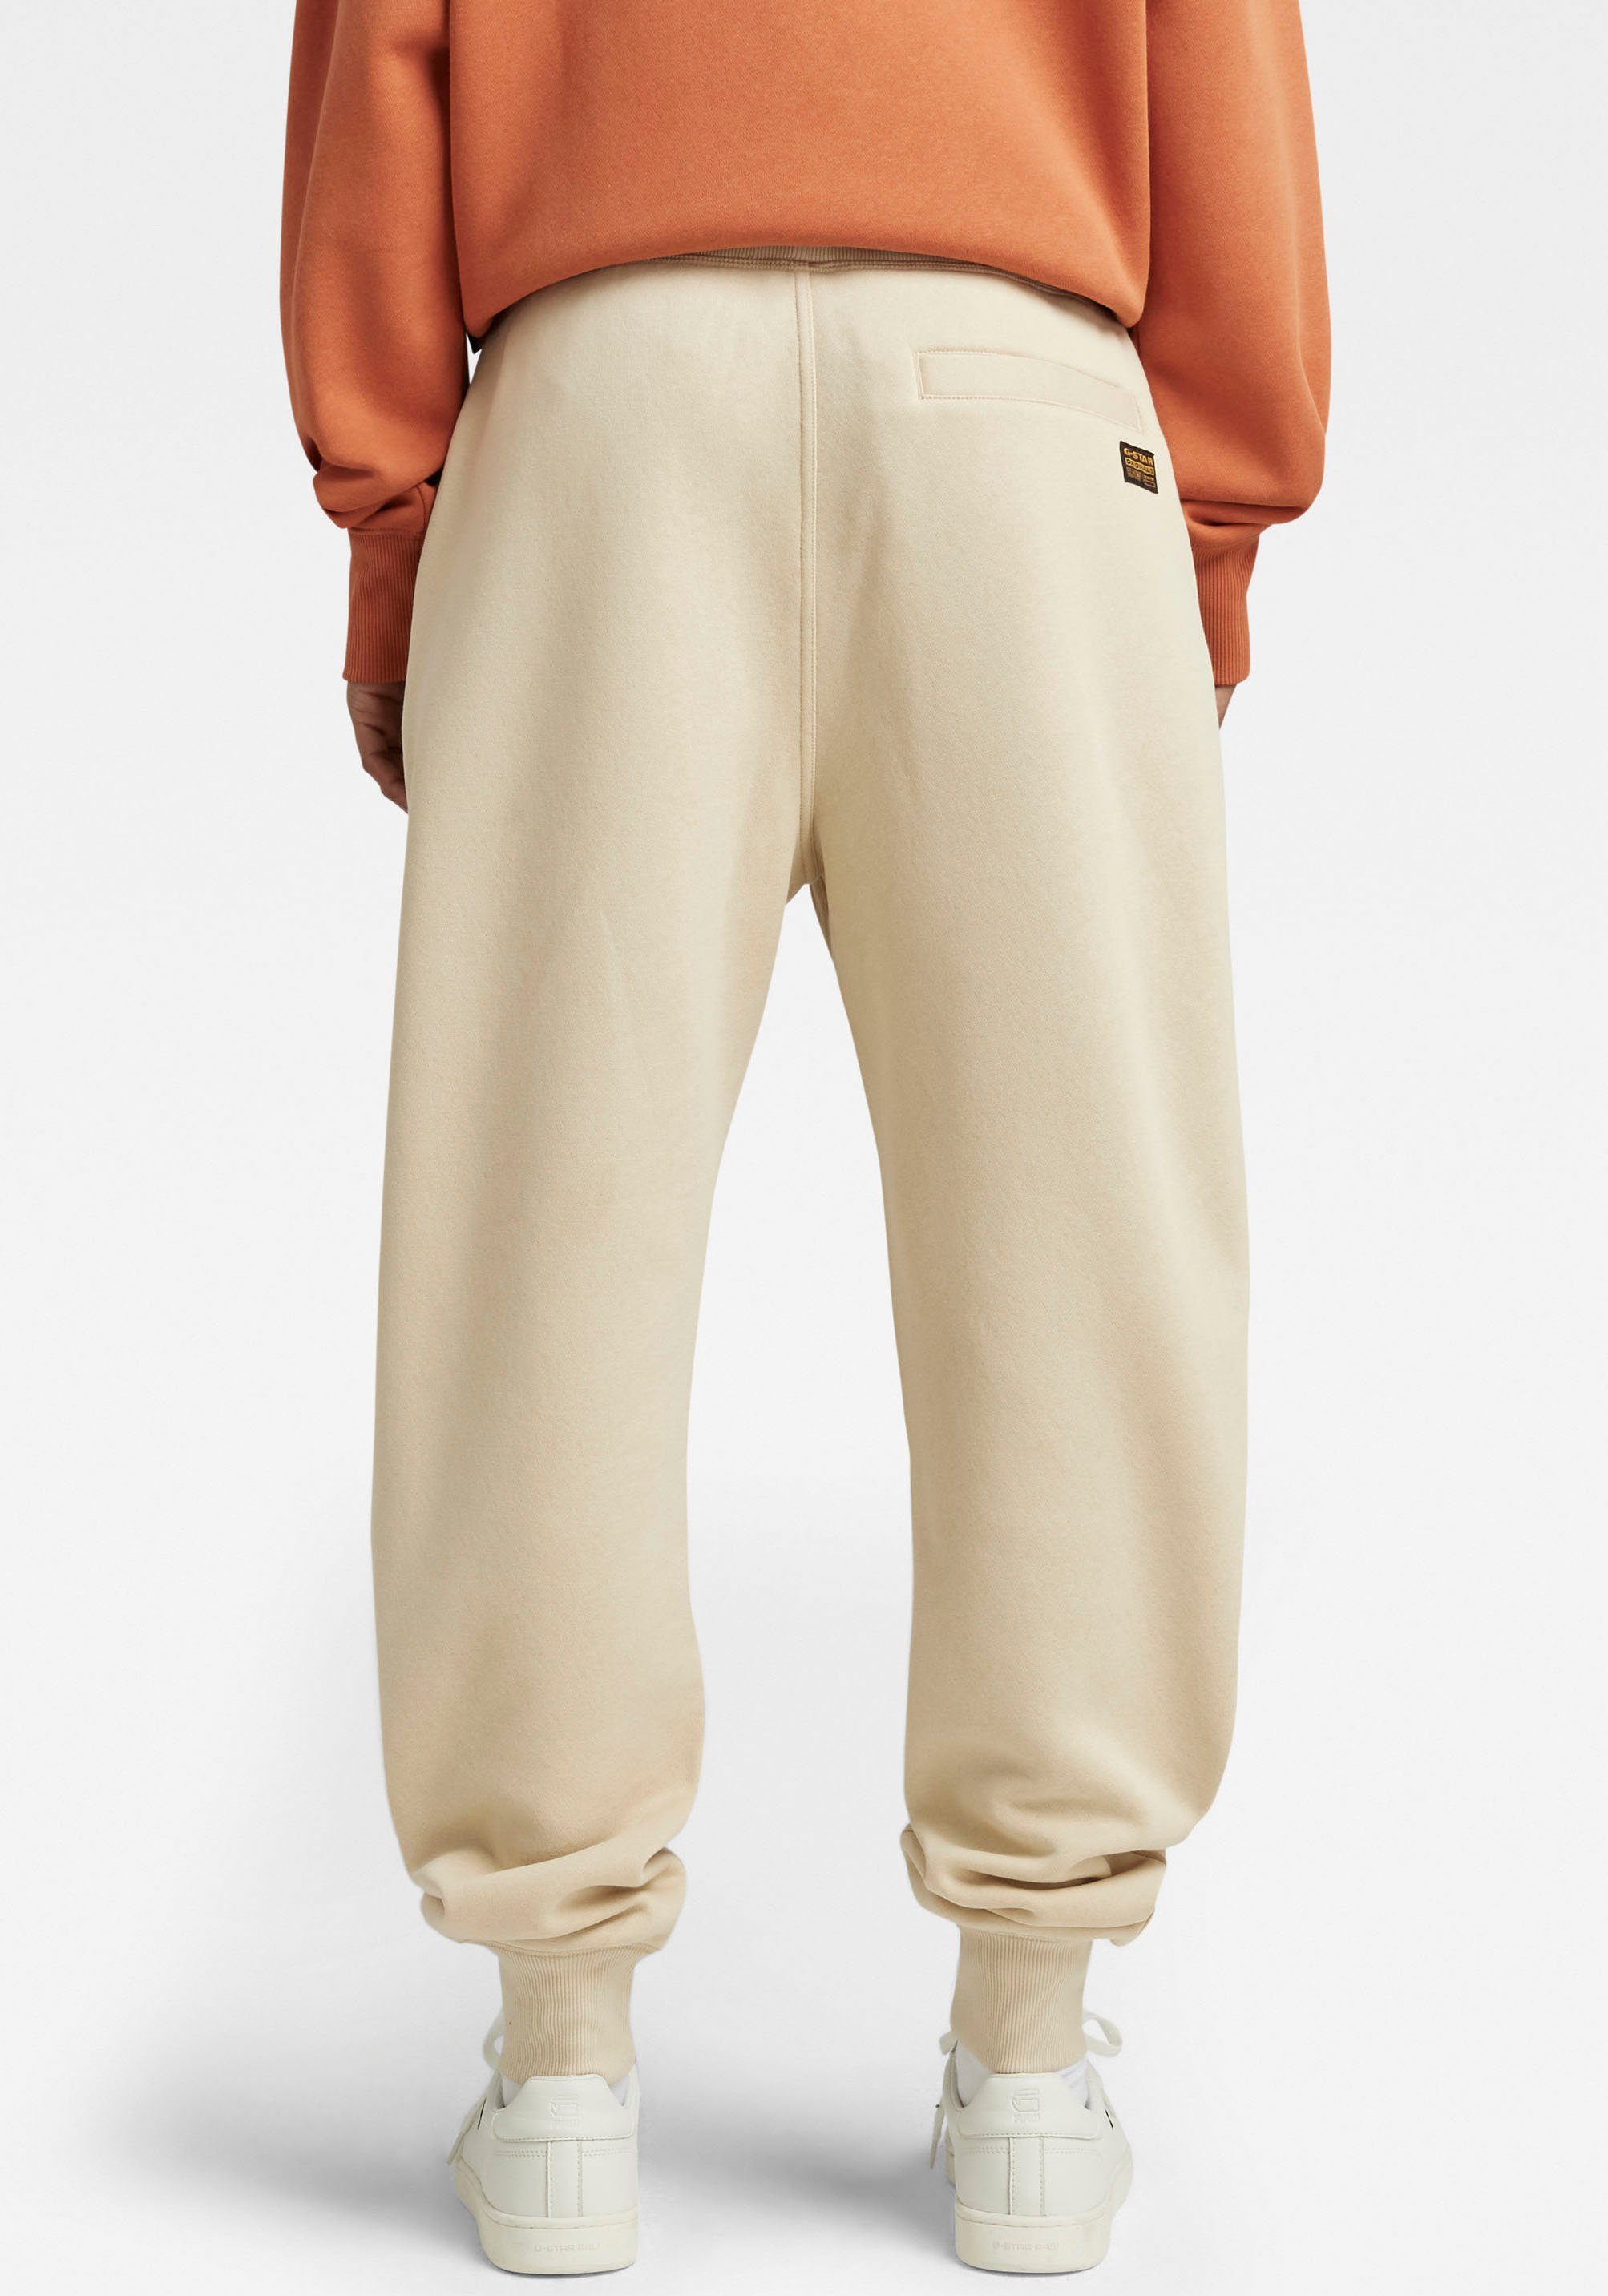 und RAW brown Sweatpants elastischen Premium mit Bund Tunnelzug 2.0 core G-Star rice Sweathose